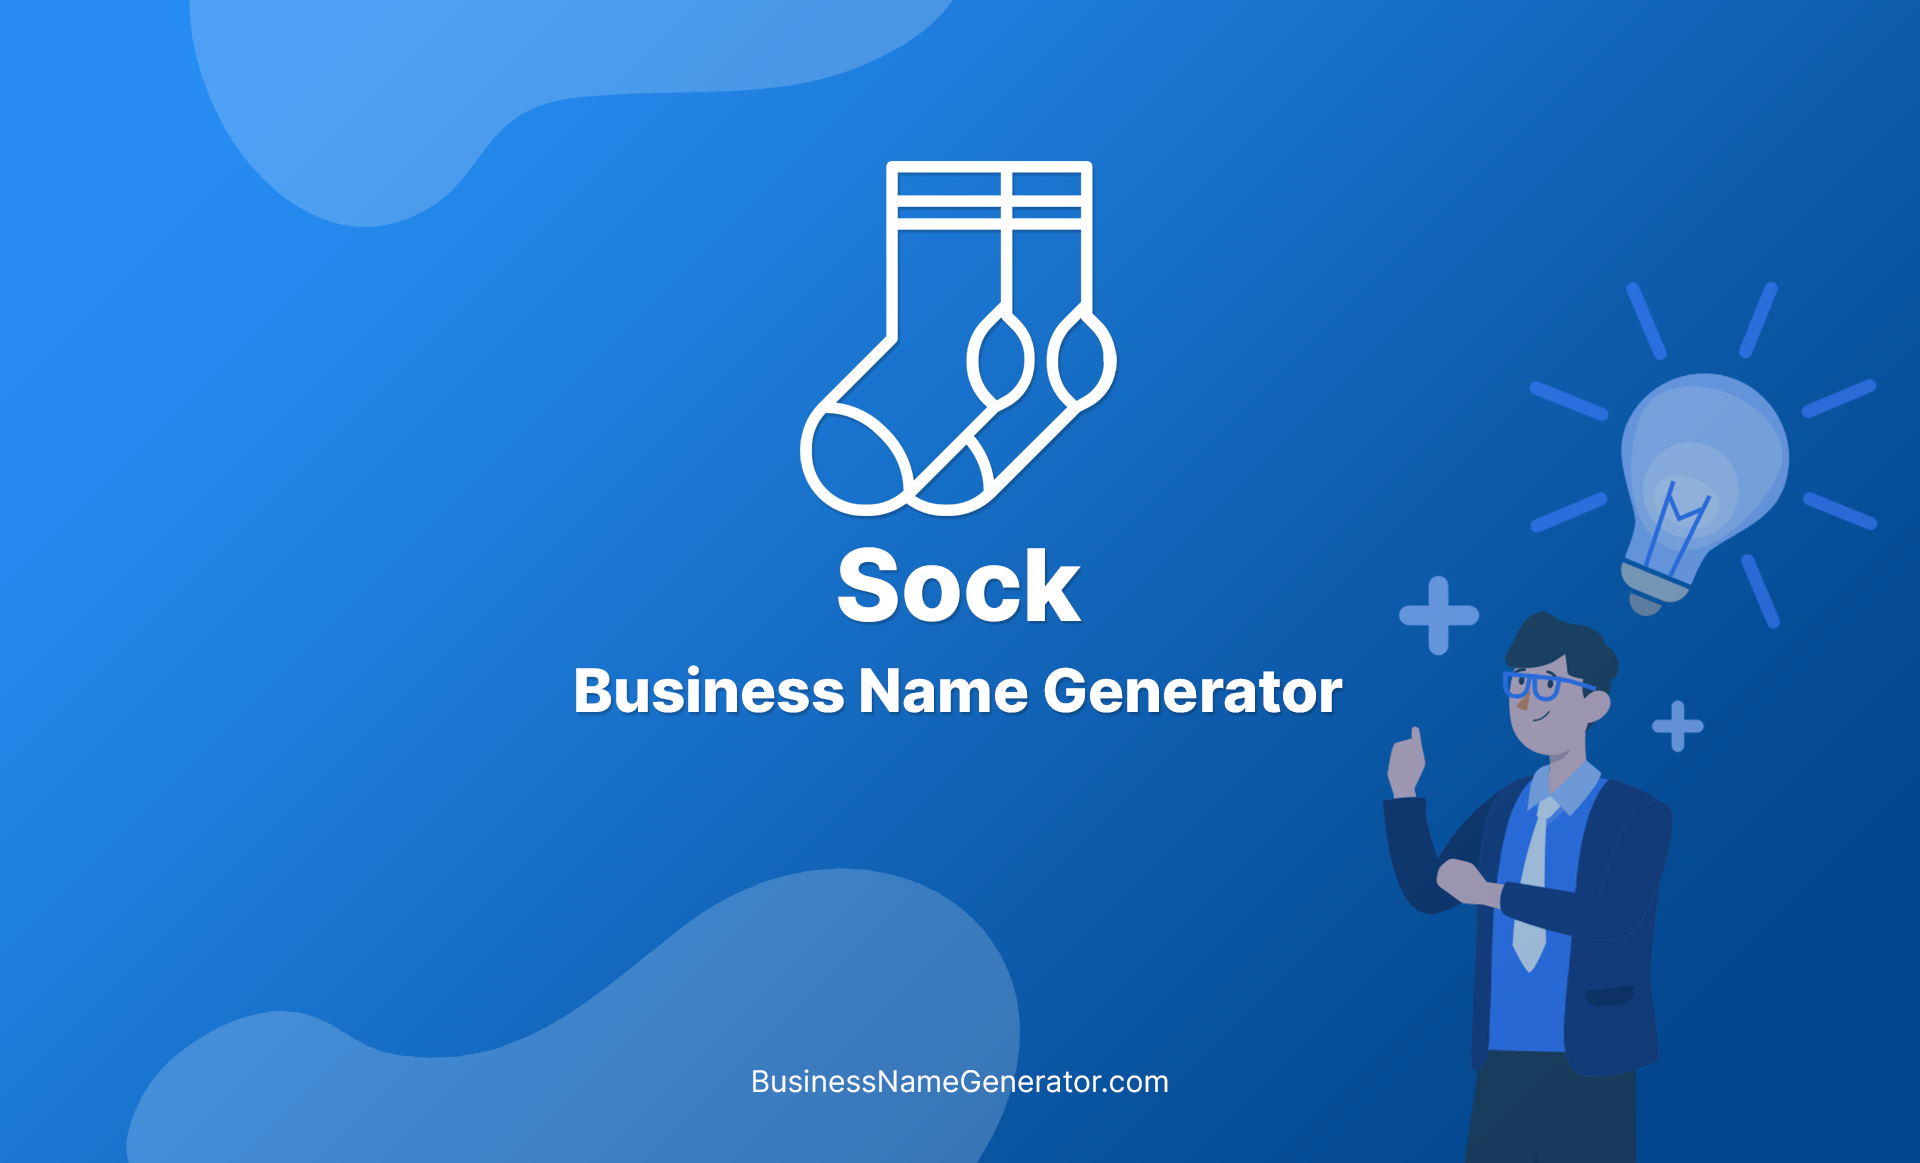 Sock Business Name Generator